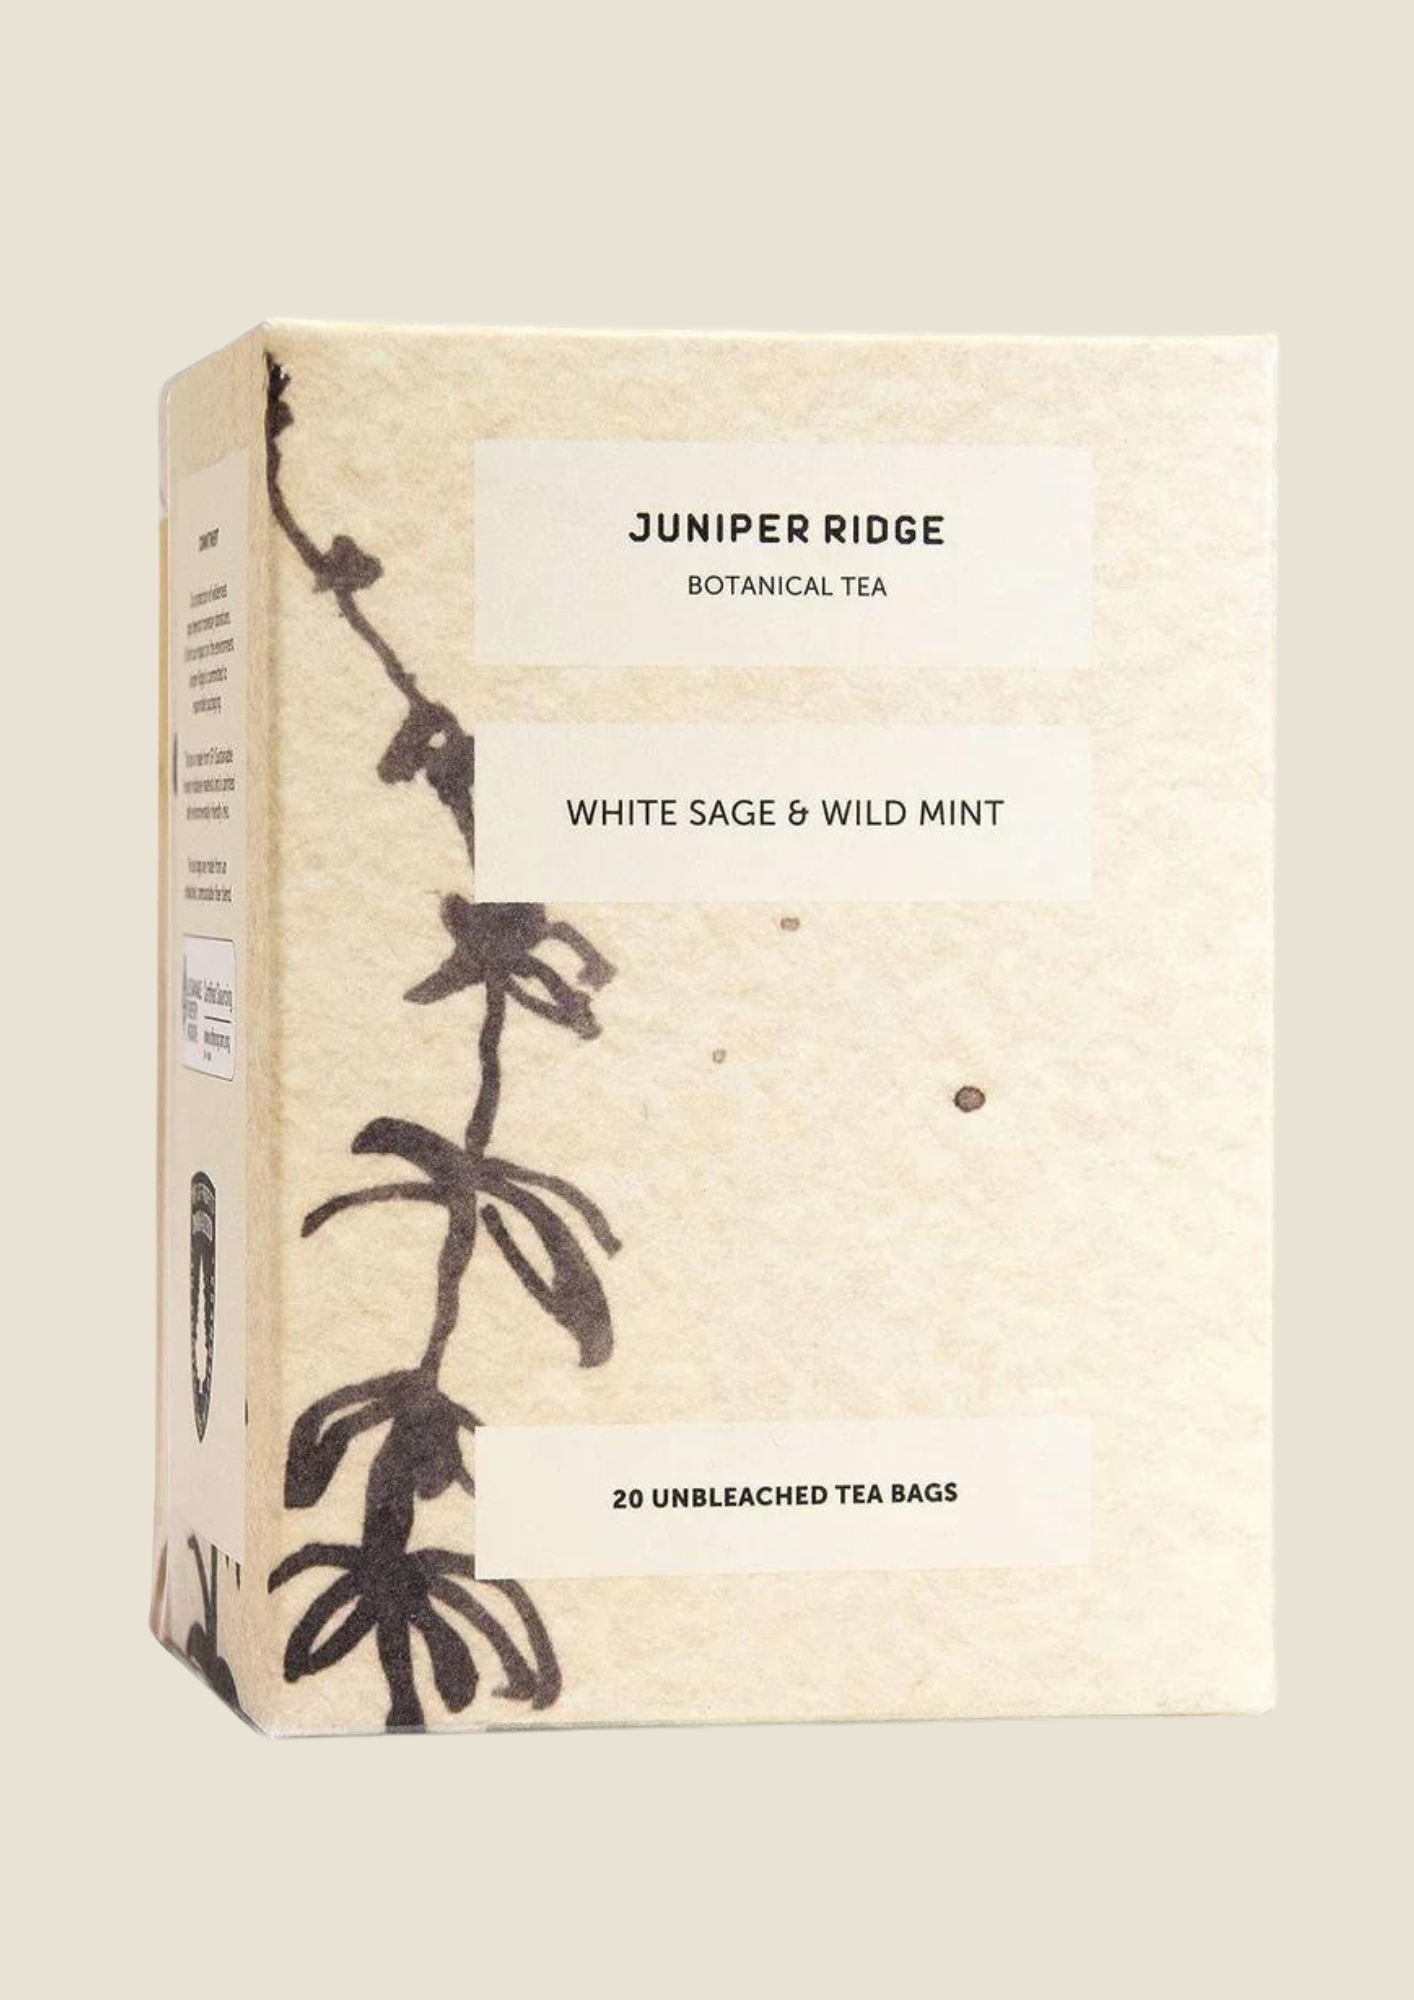 White Sage & Wild Mint Botanical Tea